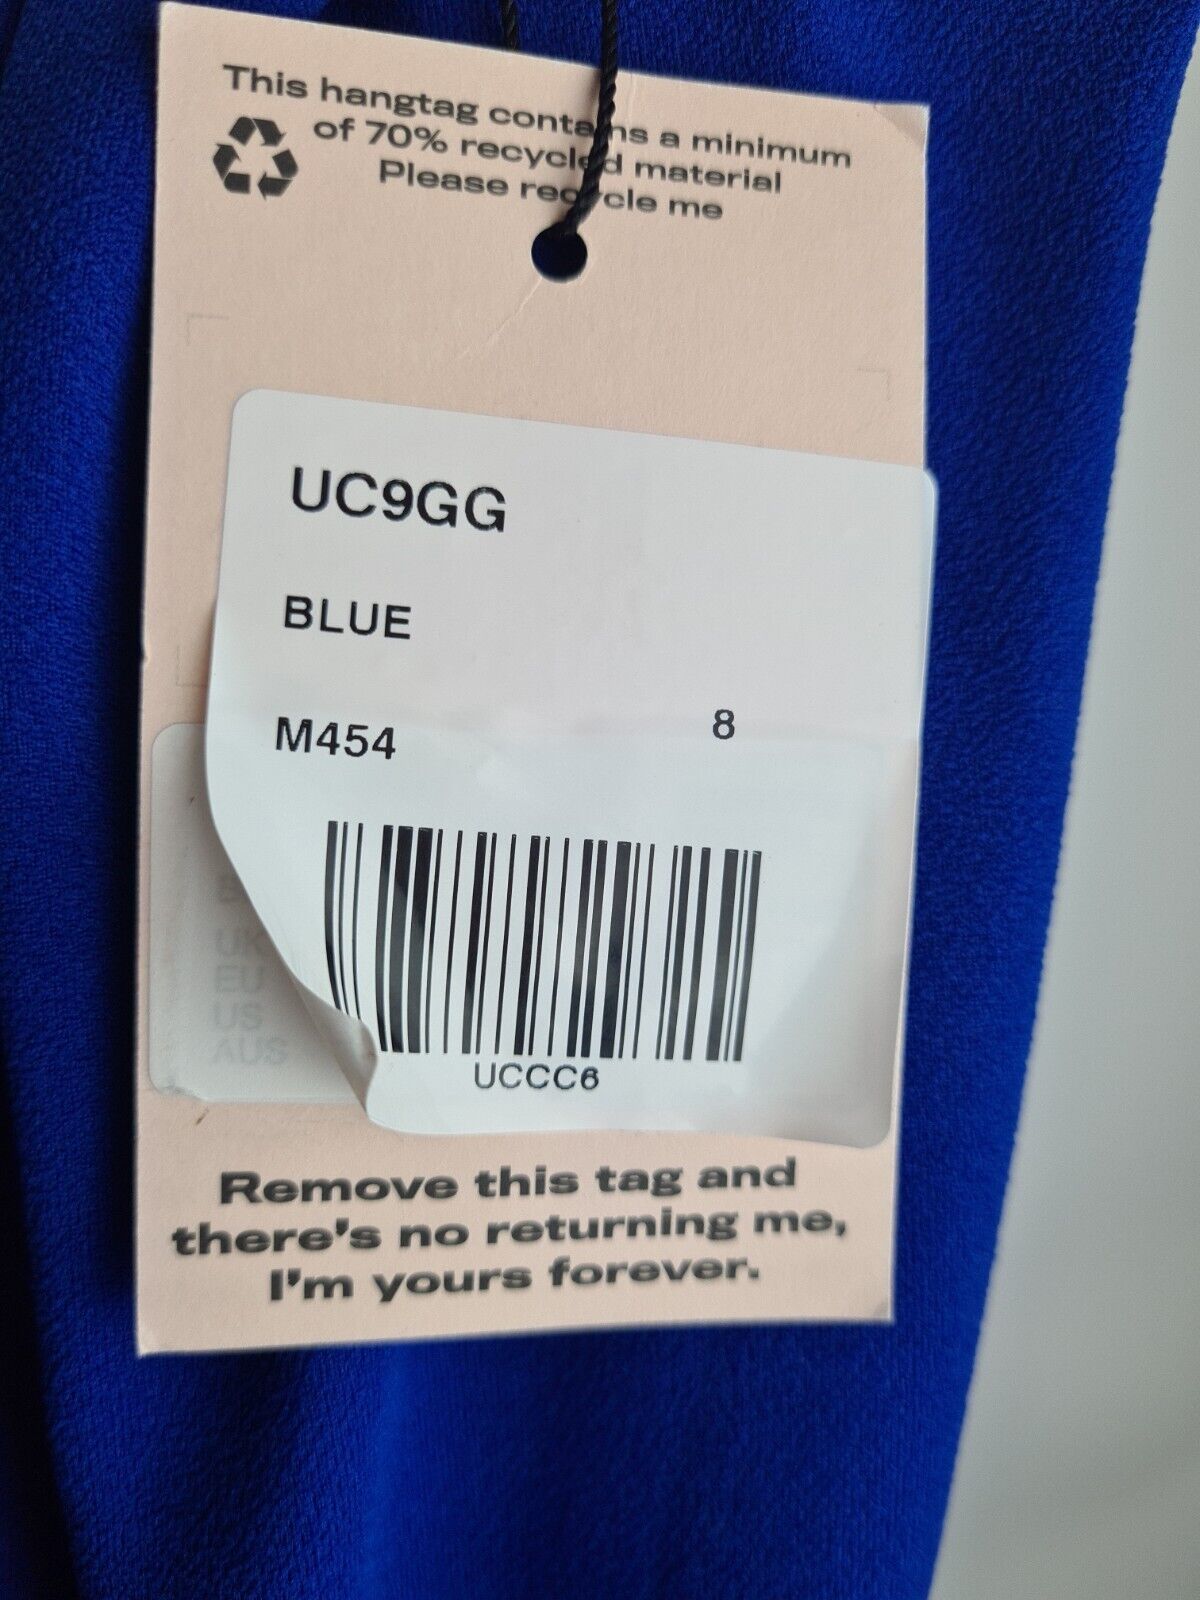 Missguided Crepe Blue Halterneck Maxi Dress Size 8 **** V61